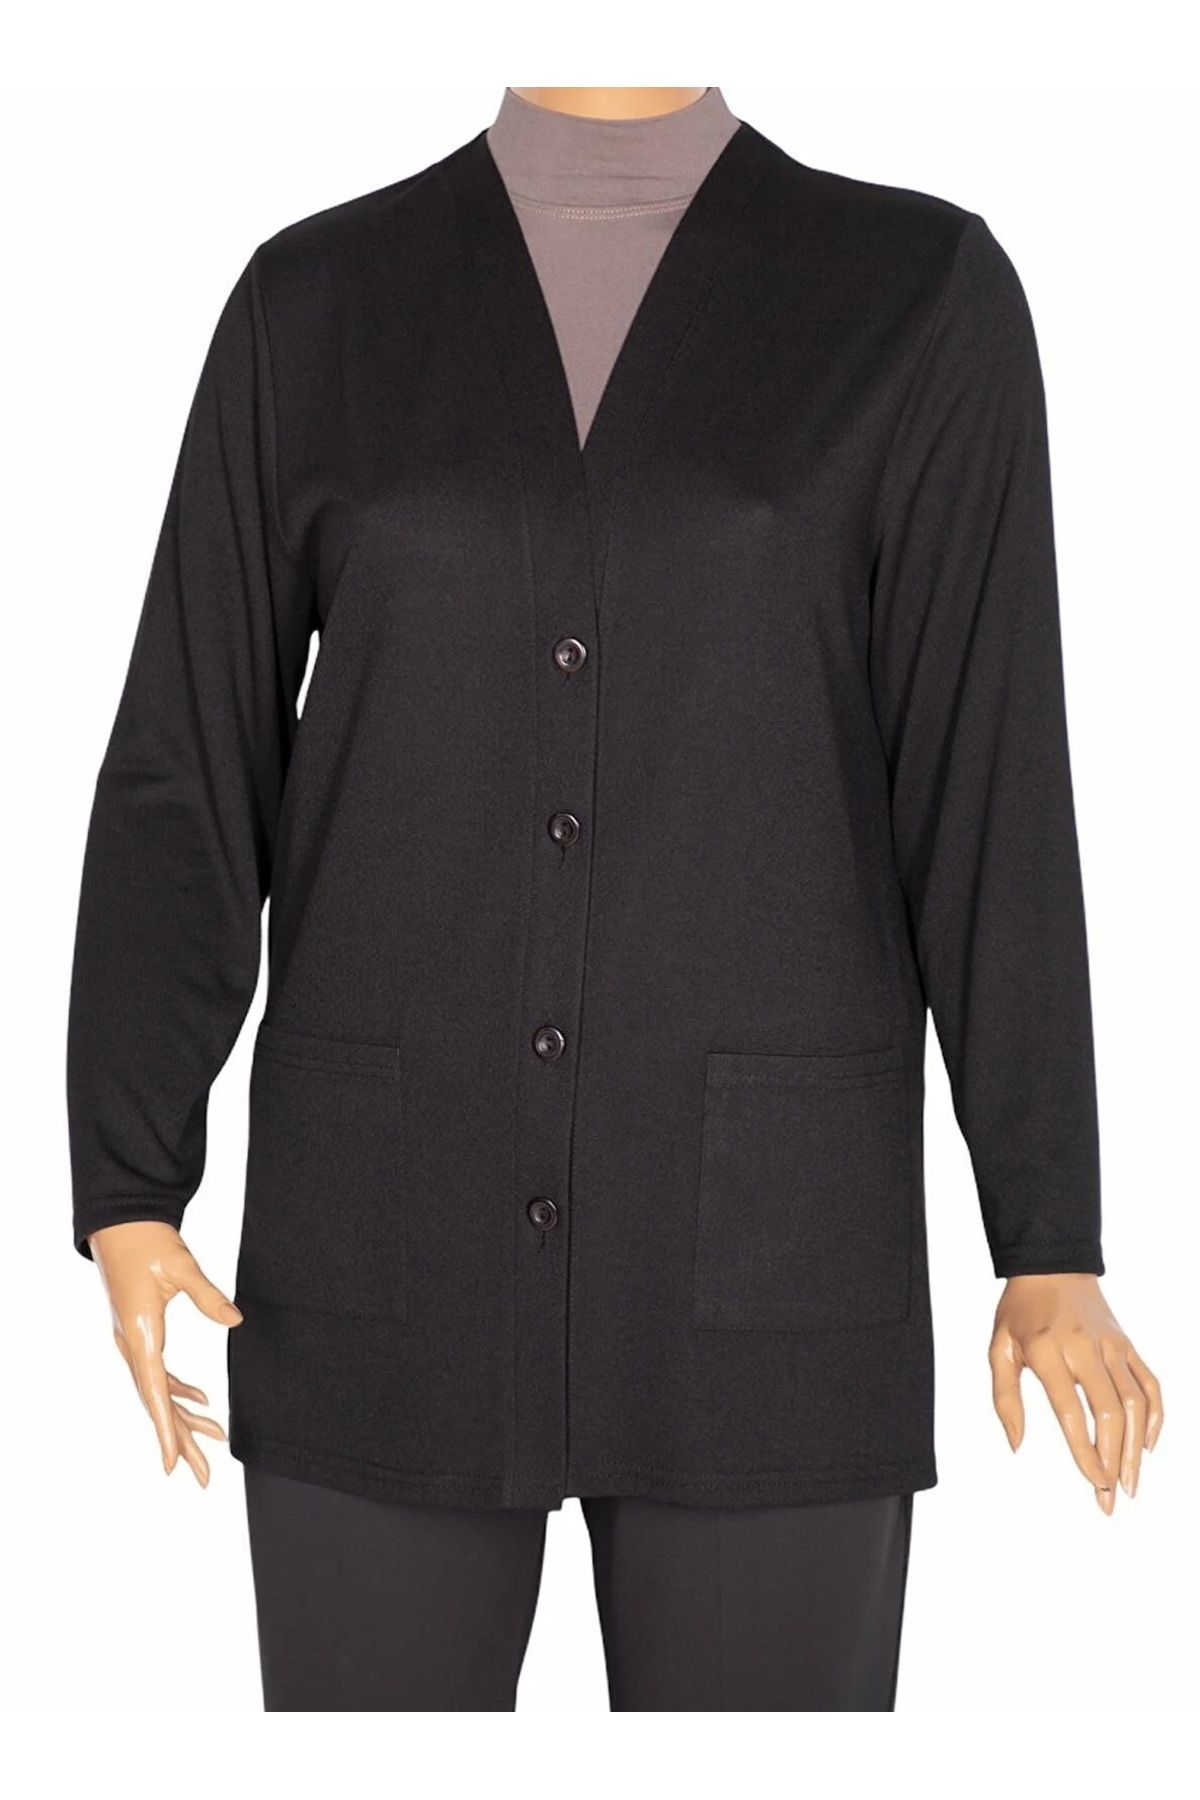 HESNA Kadın  Cepli Düğmeli Siyah Ceket ( Hesna 500 Ceket )